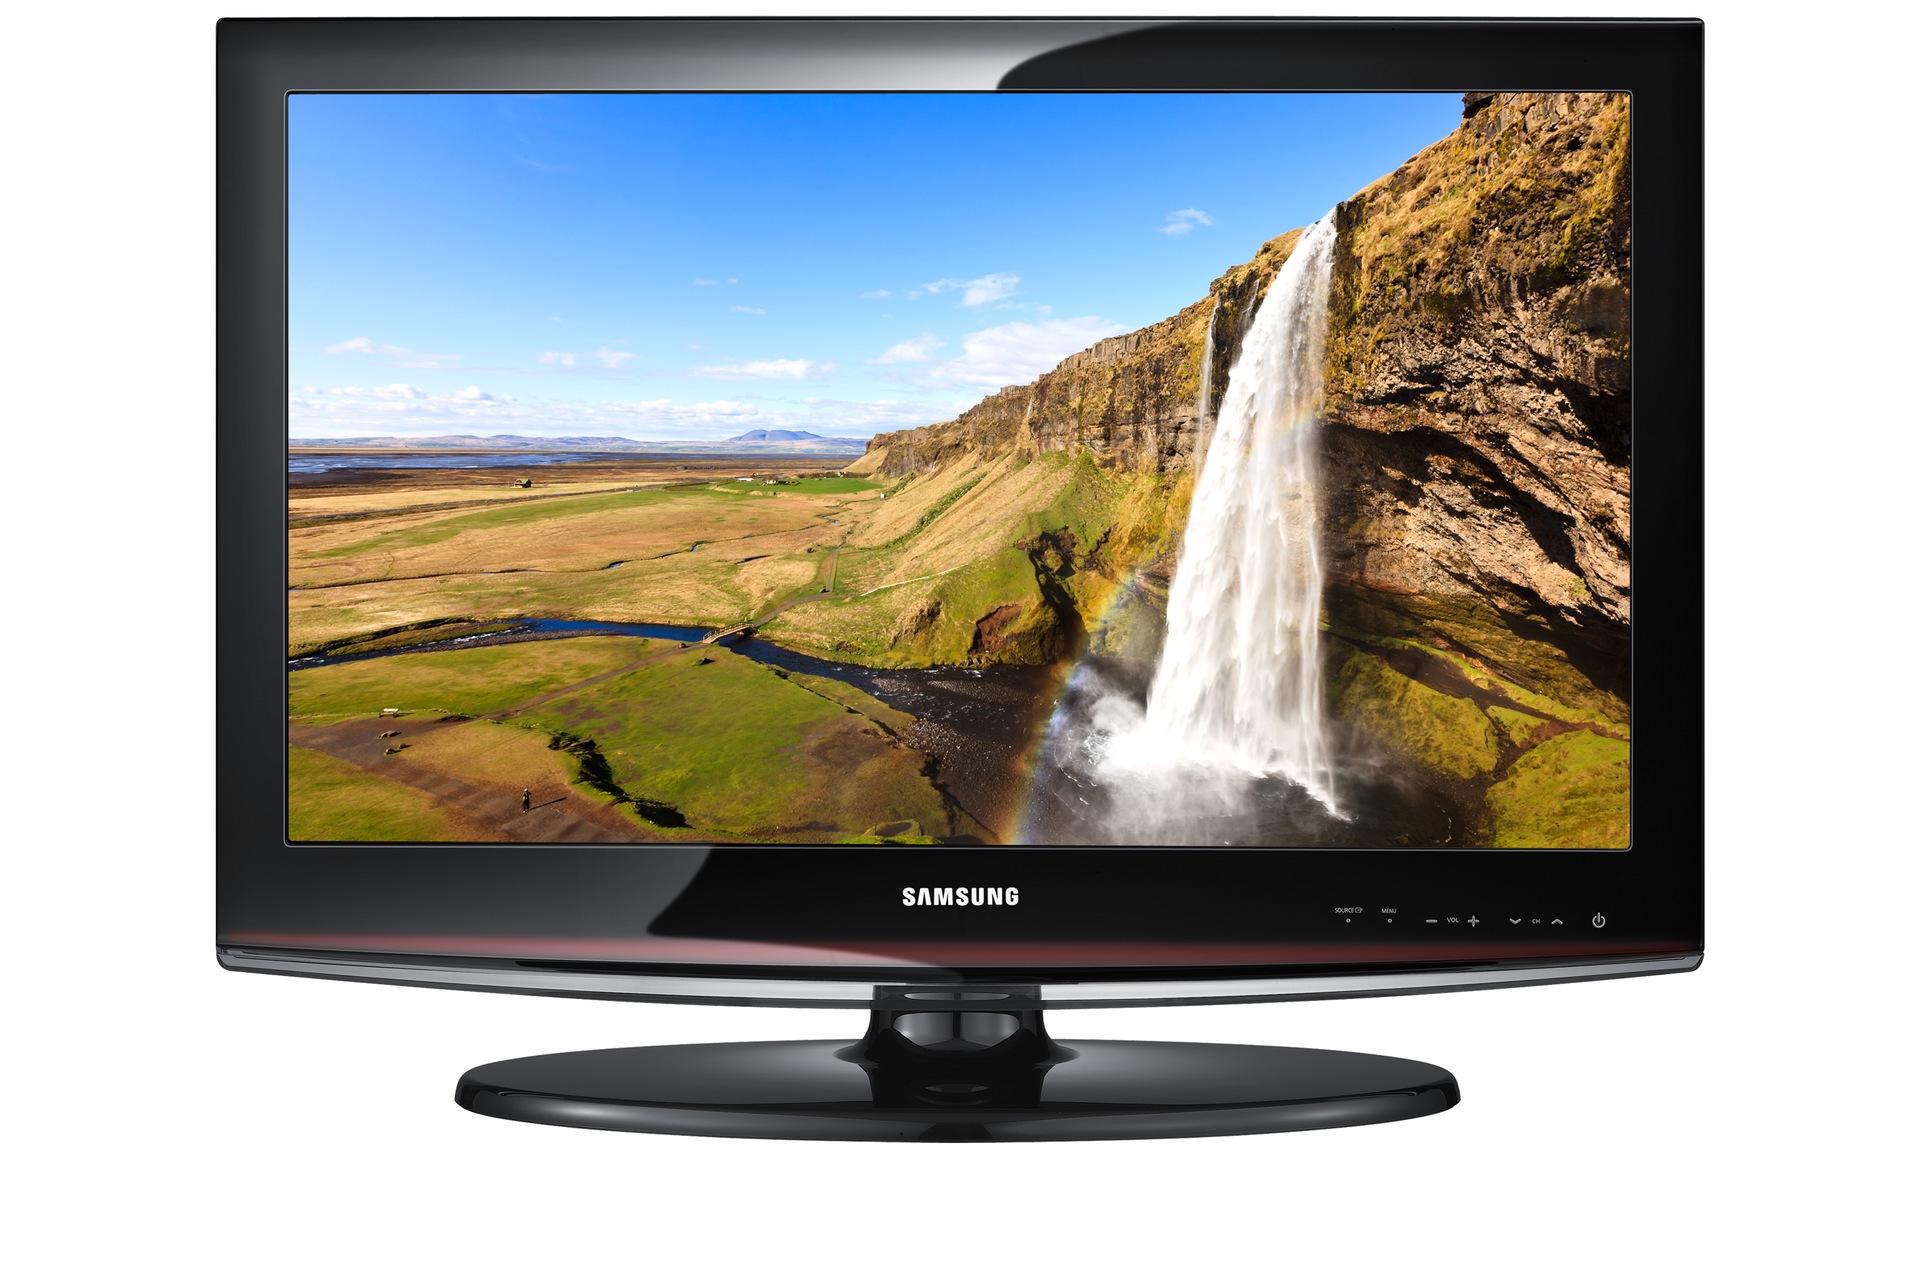 Televisores Samsung Serie 4 LCD HDTV LN26A450P 26 pulgadas – Electrónica